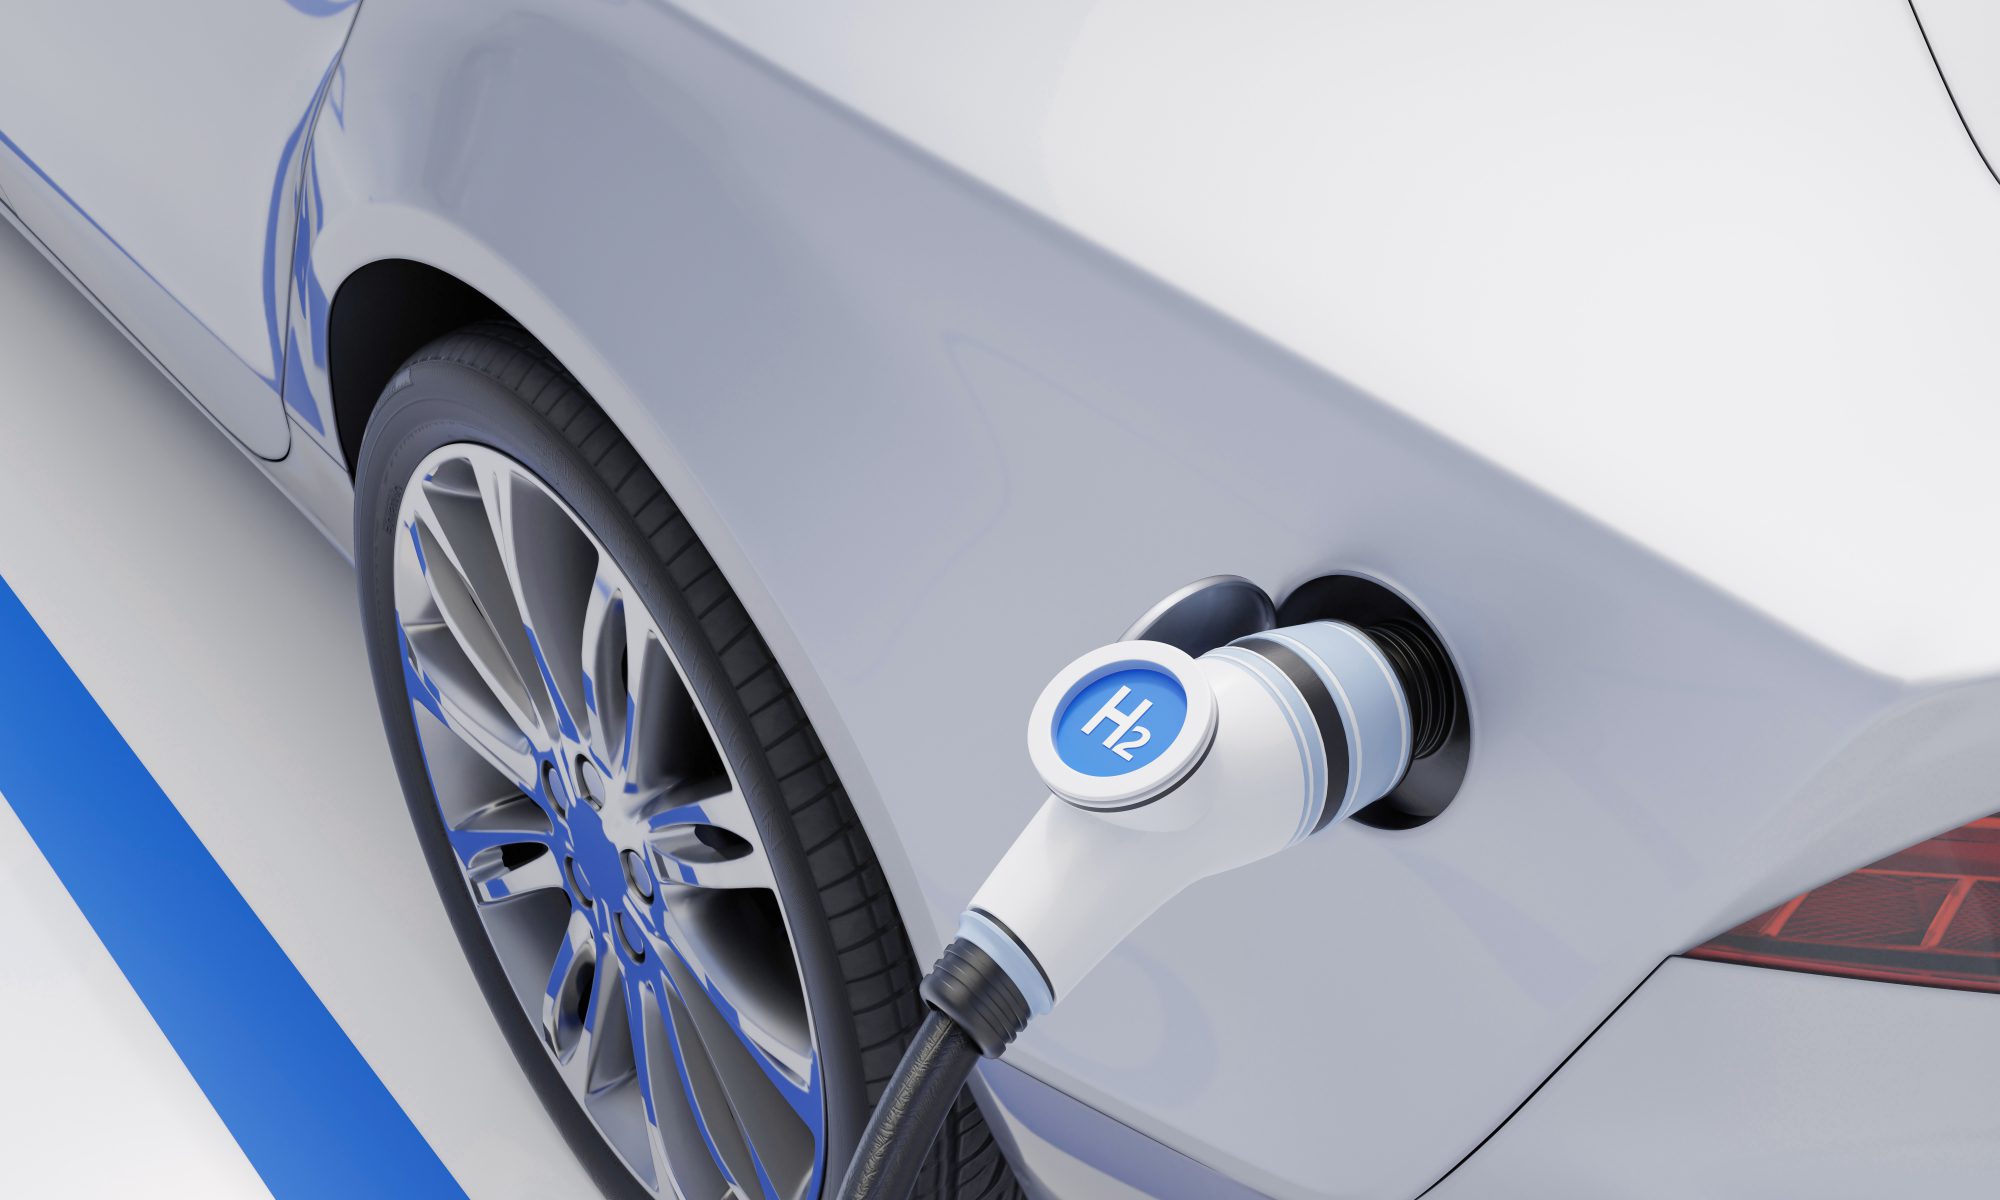 hydrogen-fuel-car